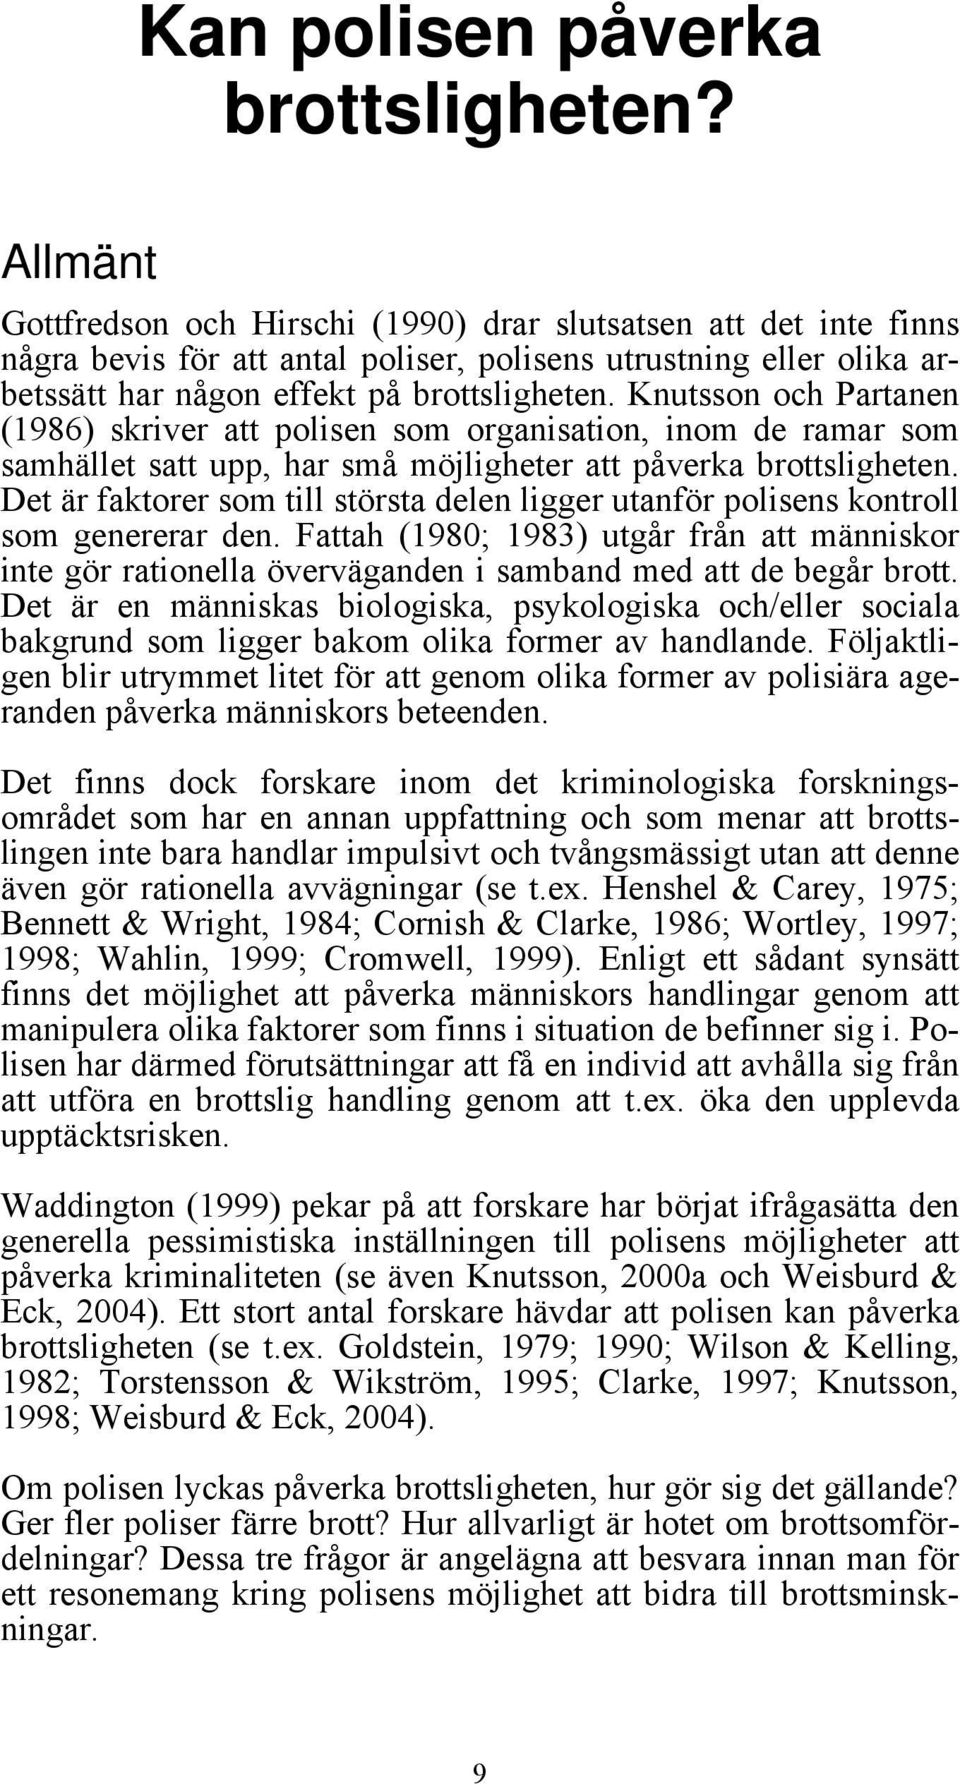 Knutsson och Partanen (1986) skriver att polisen som organisation, inom de ramar som samhället satt upp, har små möjligheter att påverka brottsligheten.